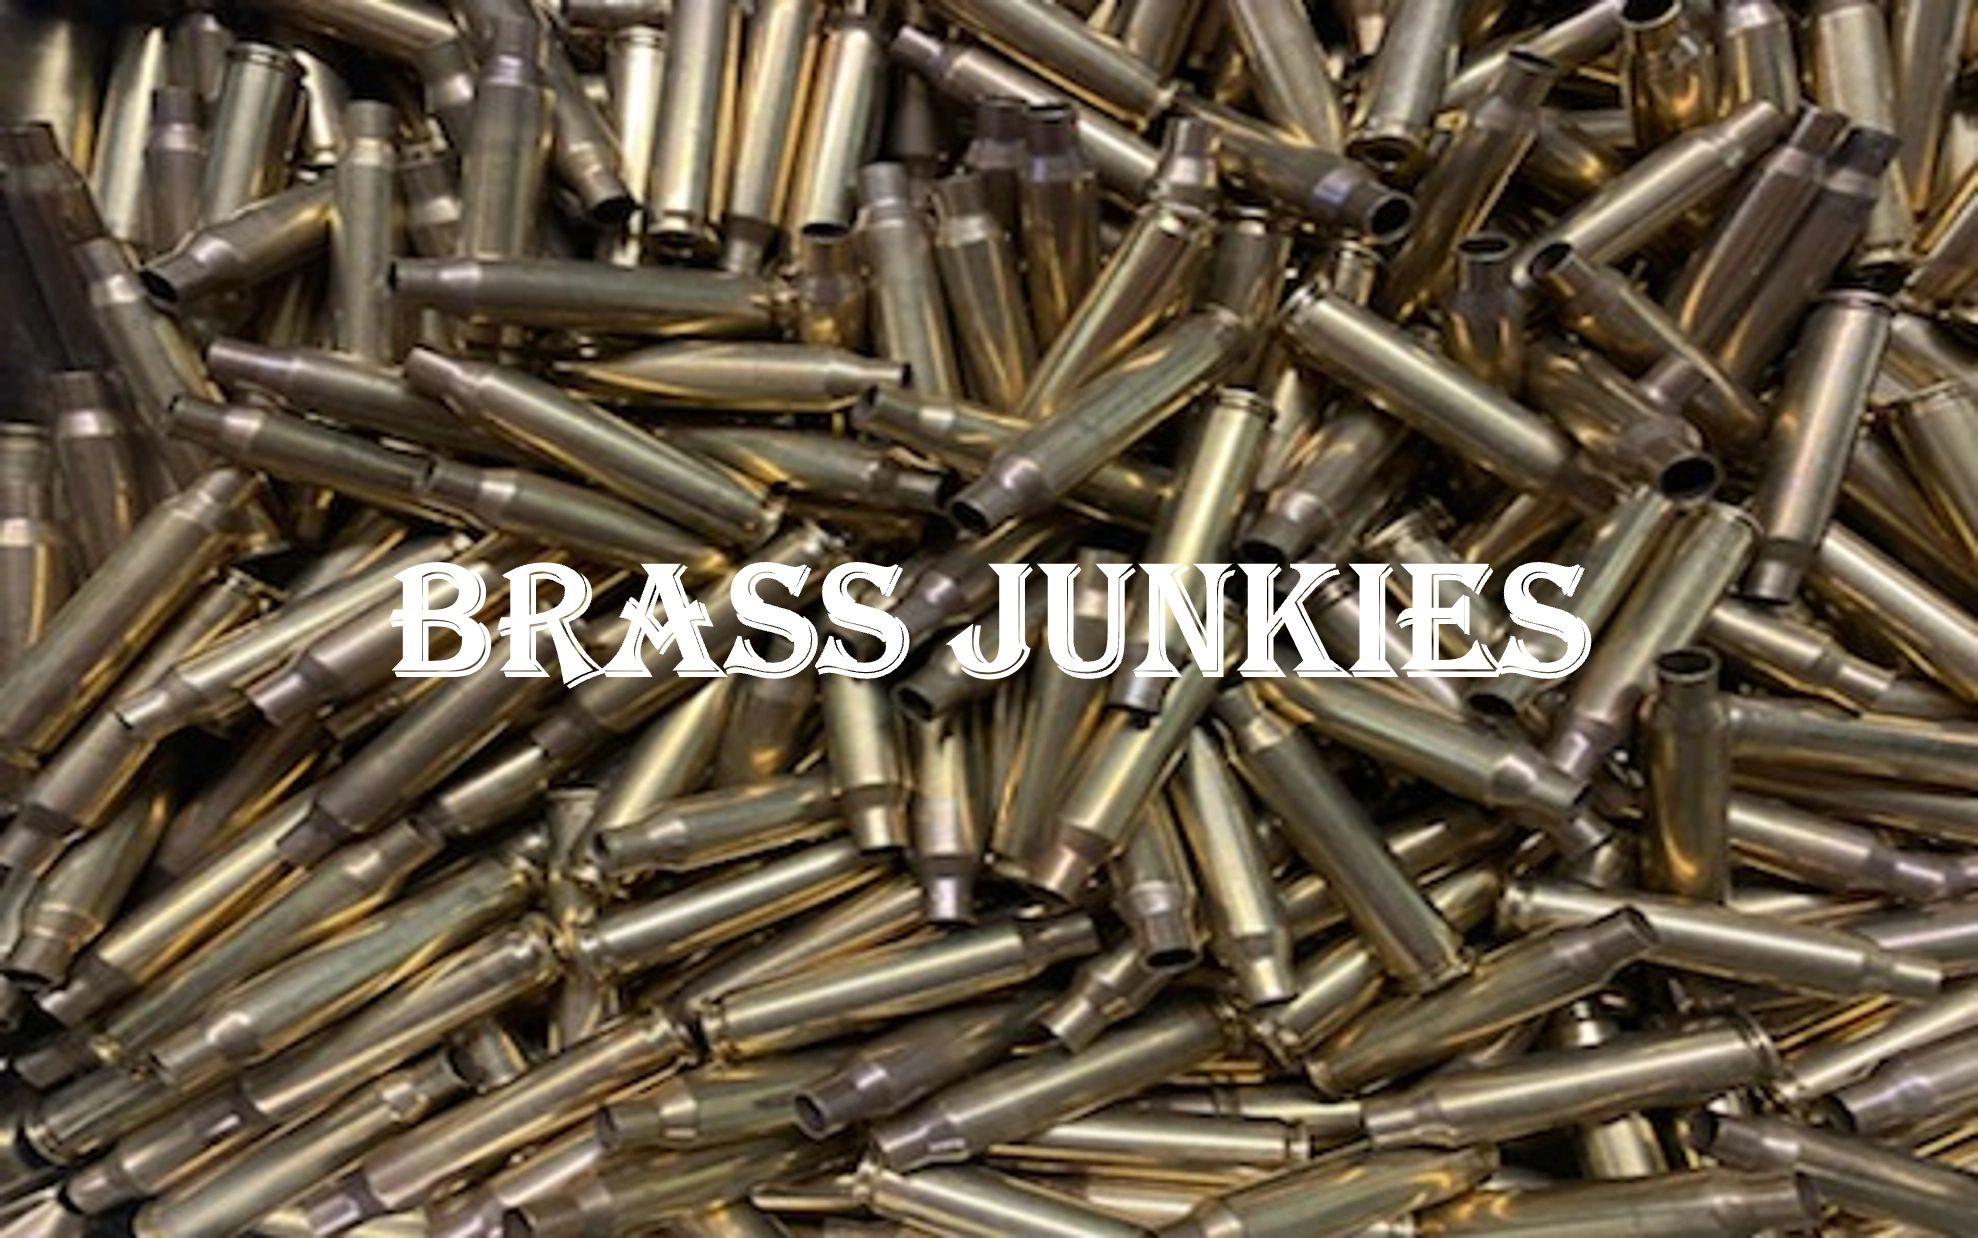 BRASS JUNKIES - Once Fired Brass Casing, Brass Shell Casing